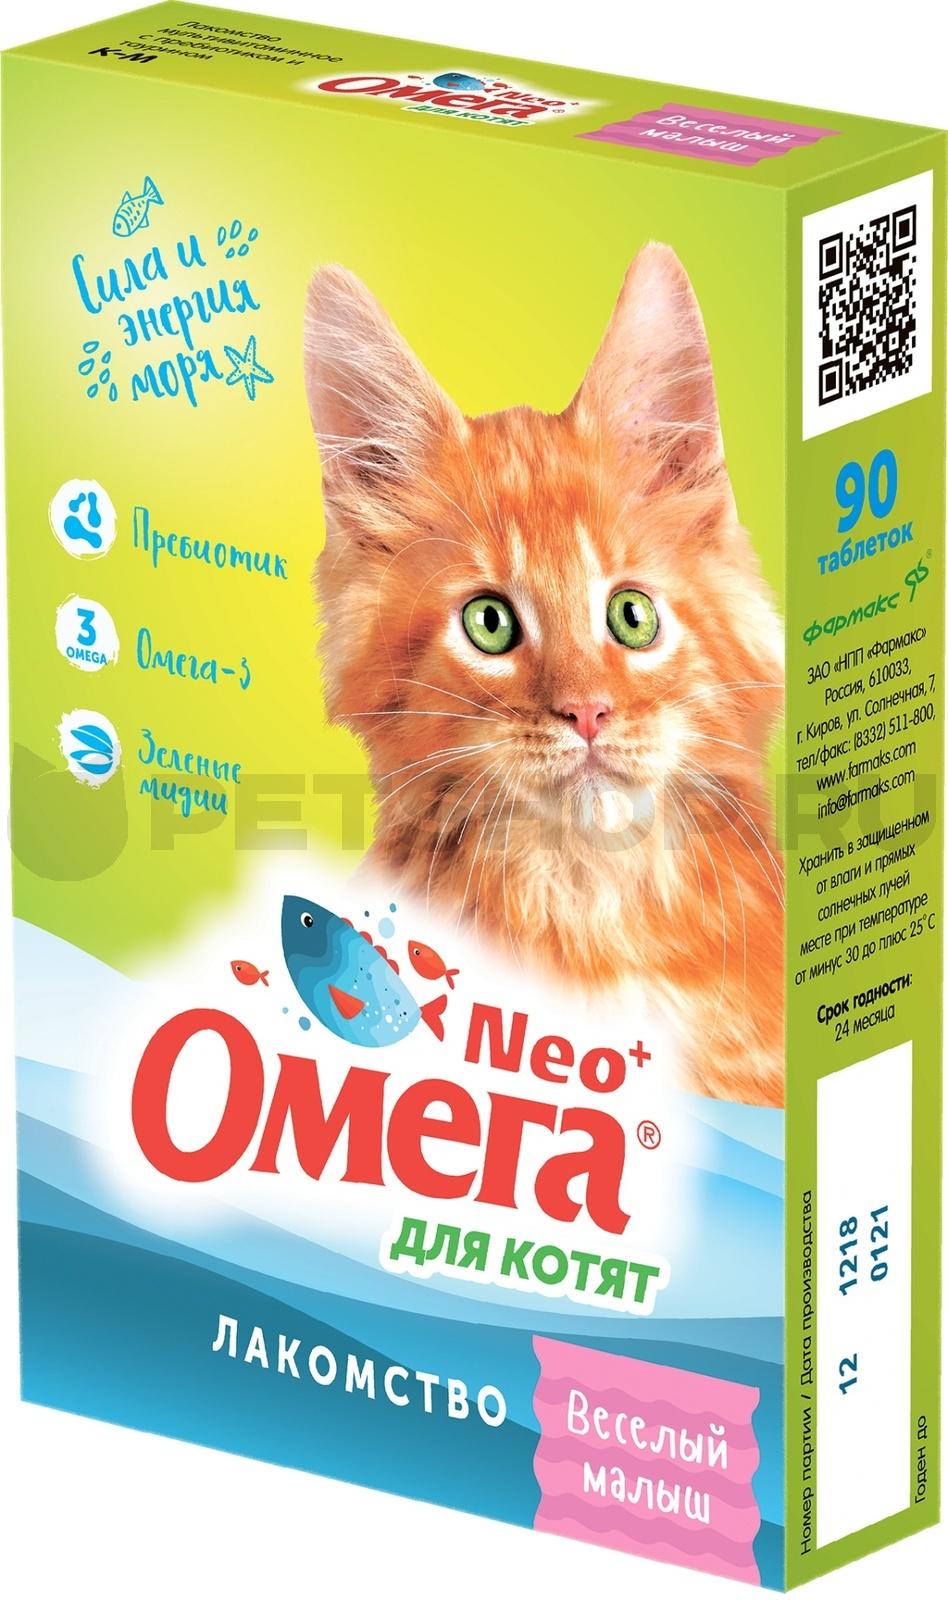 ОМЕГА NEO+ Витамины Веселый Малыш для котят 60шт купить, цена в  интернет-магазине Багира Симферополь, Крым